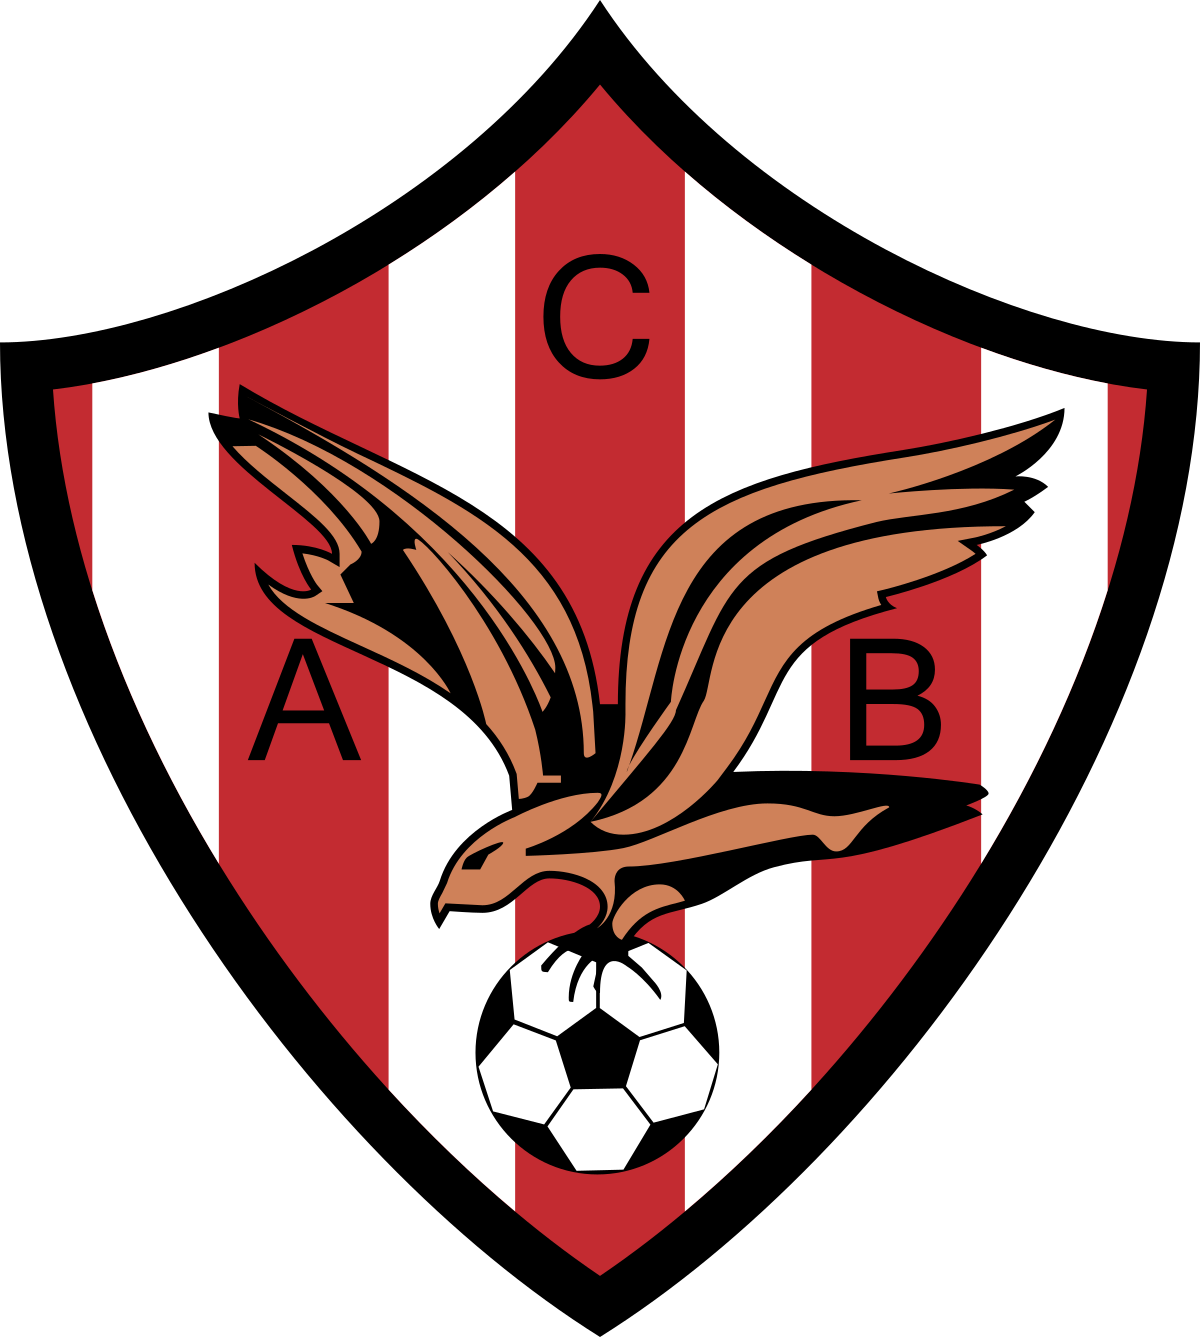 Wappen Club Atlético Bembibre